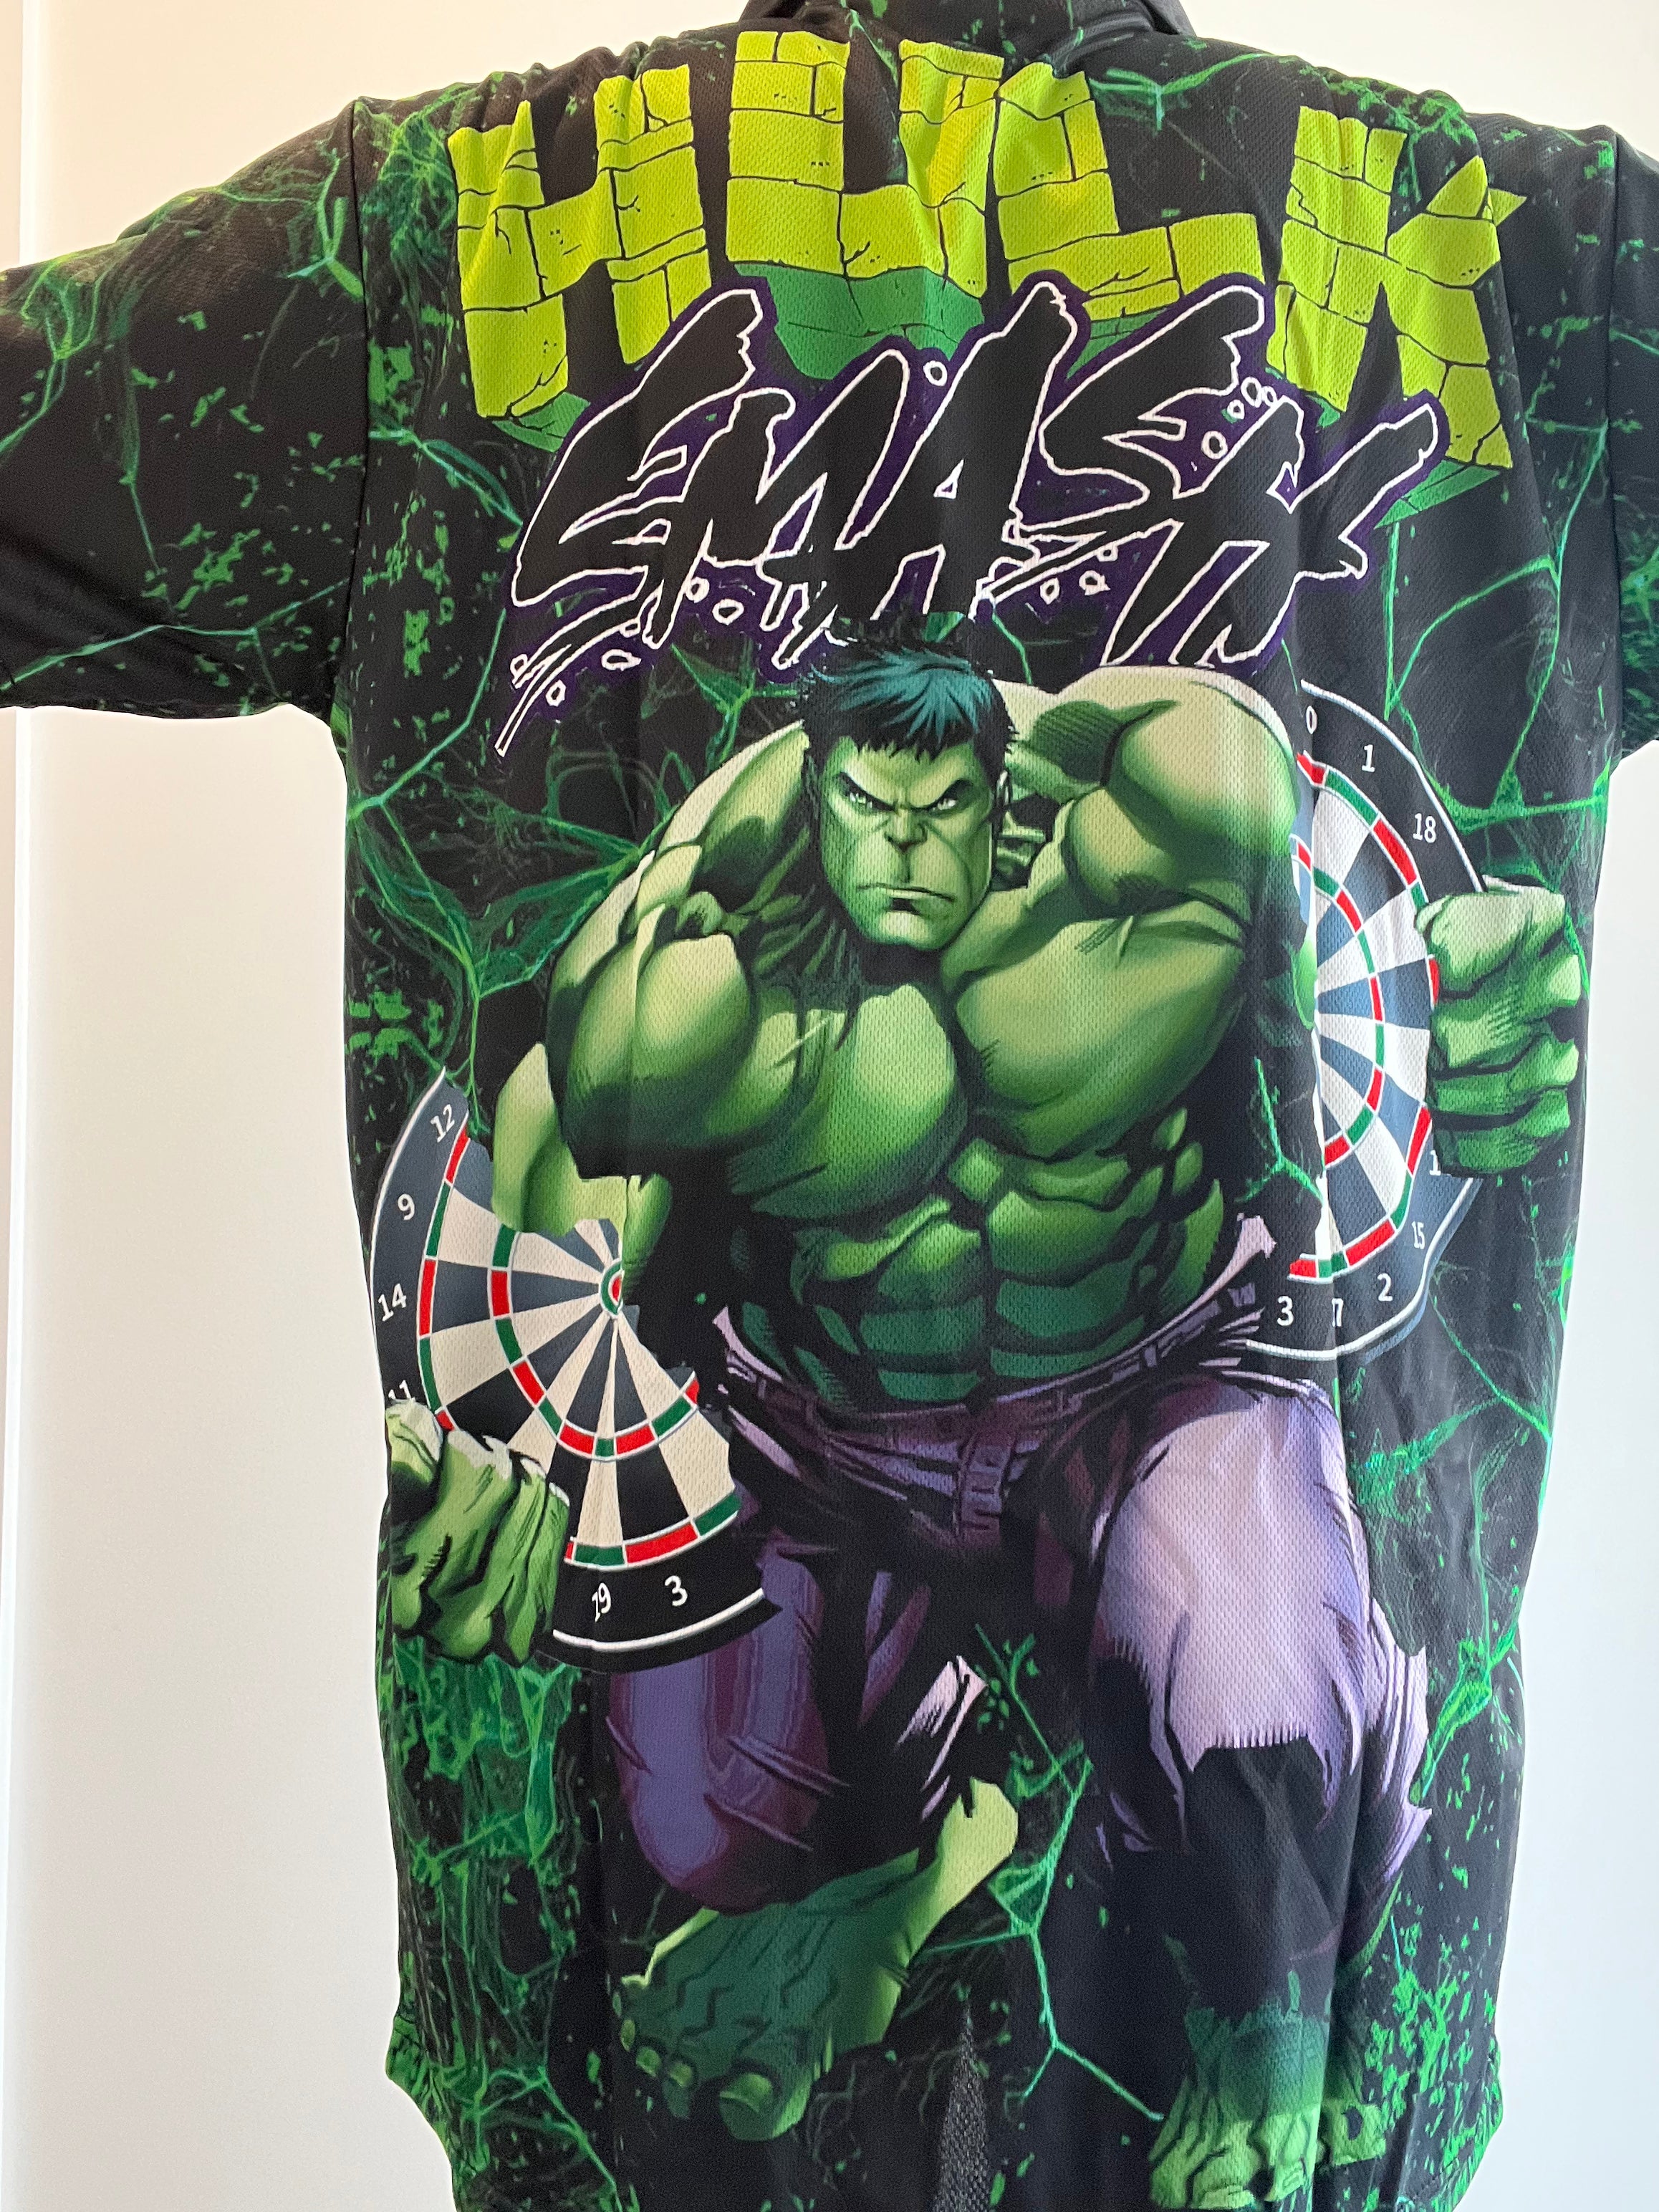 Hulk Smash Shirt